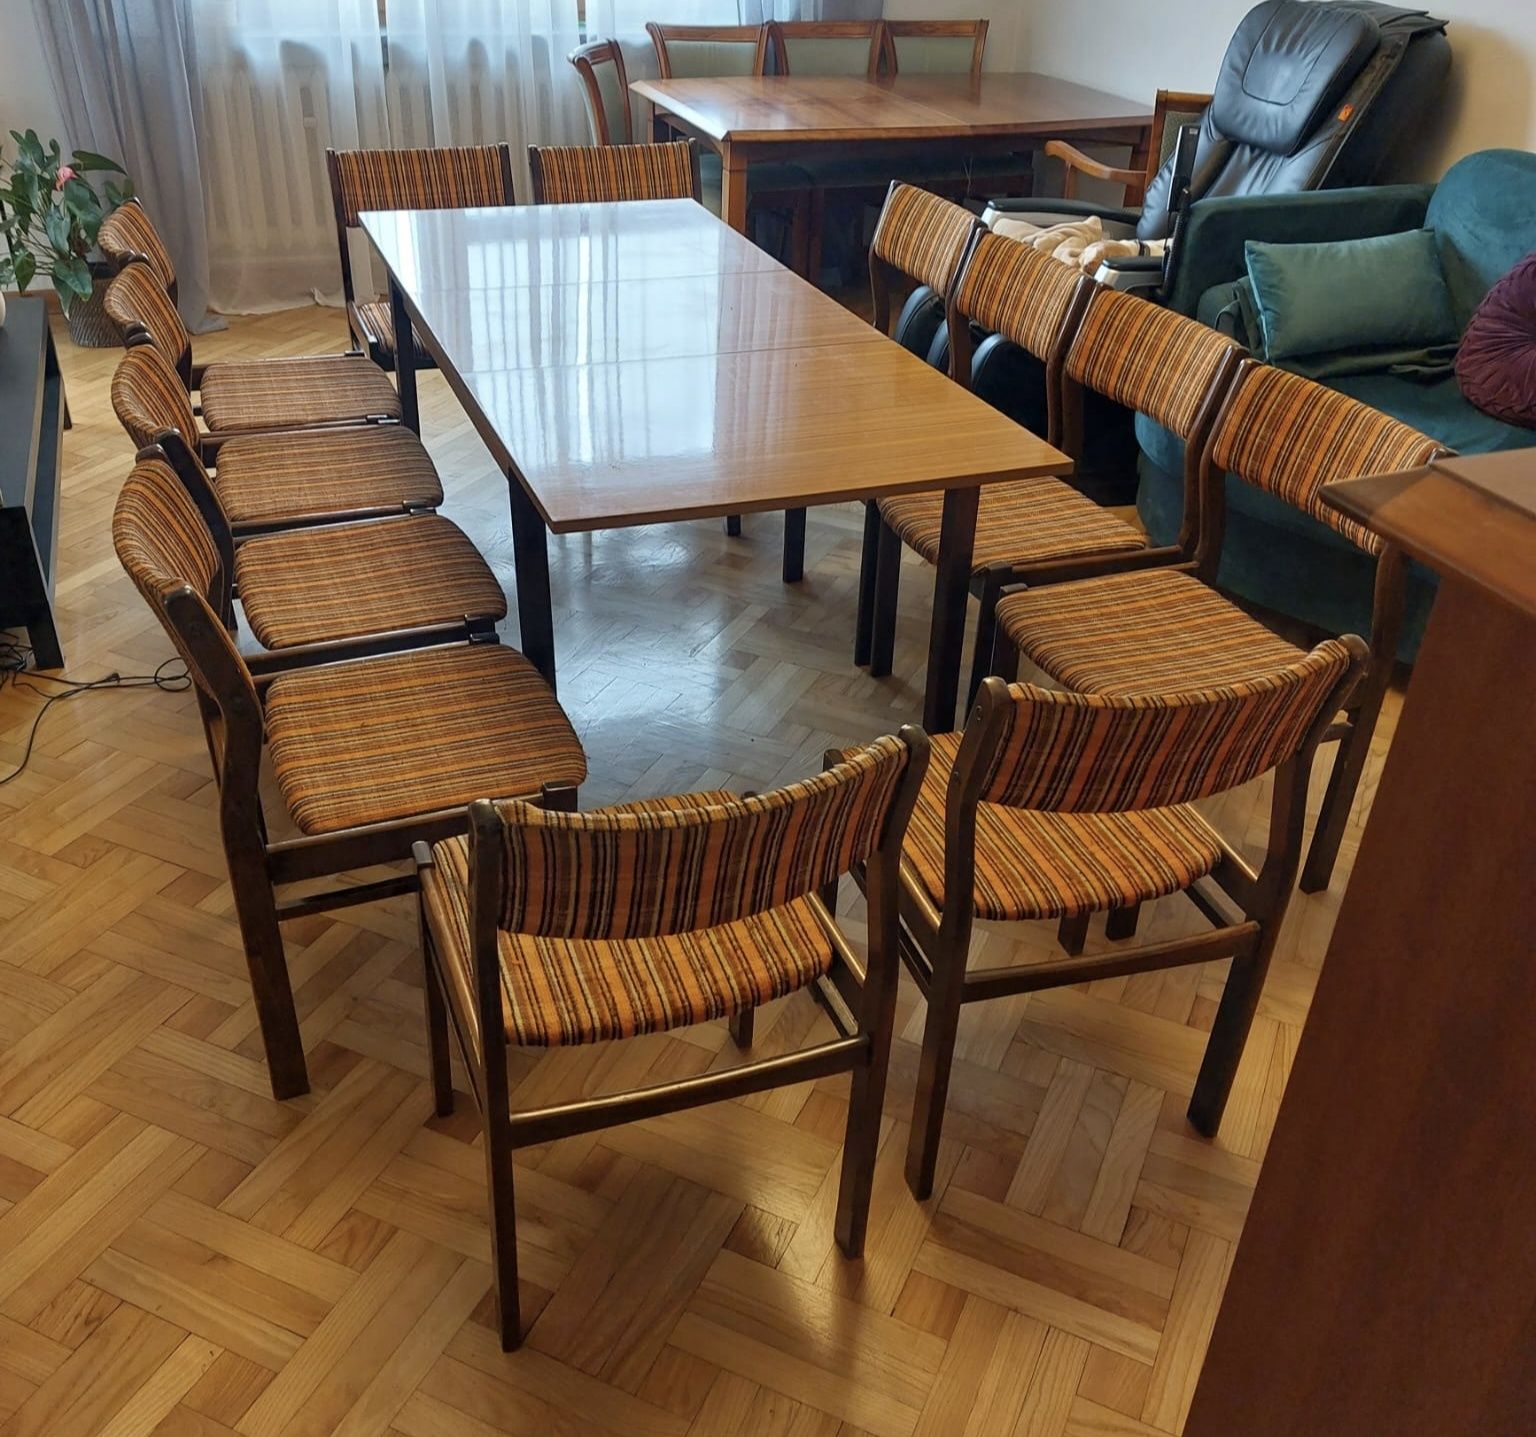 12 krzeseł i stół